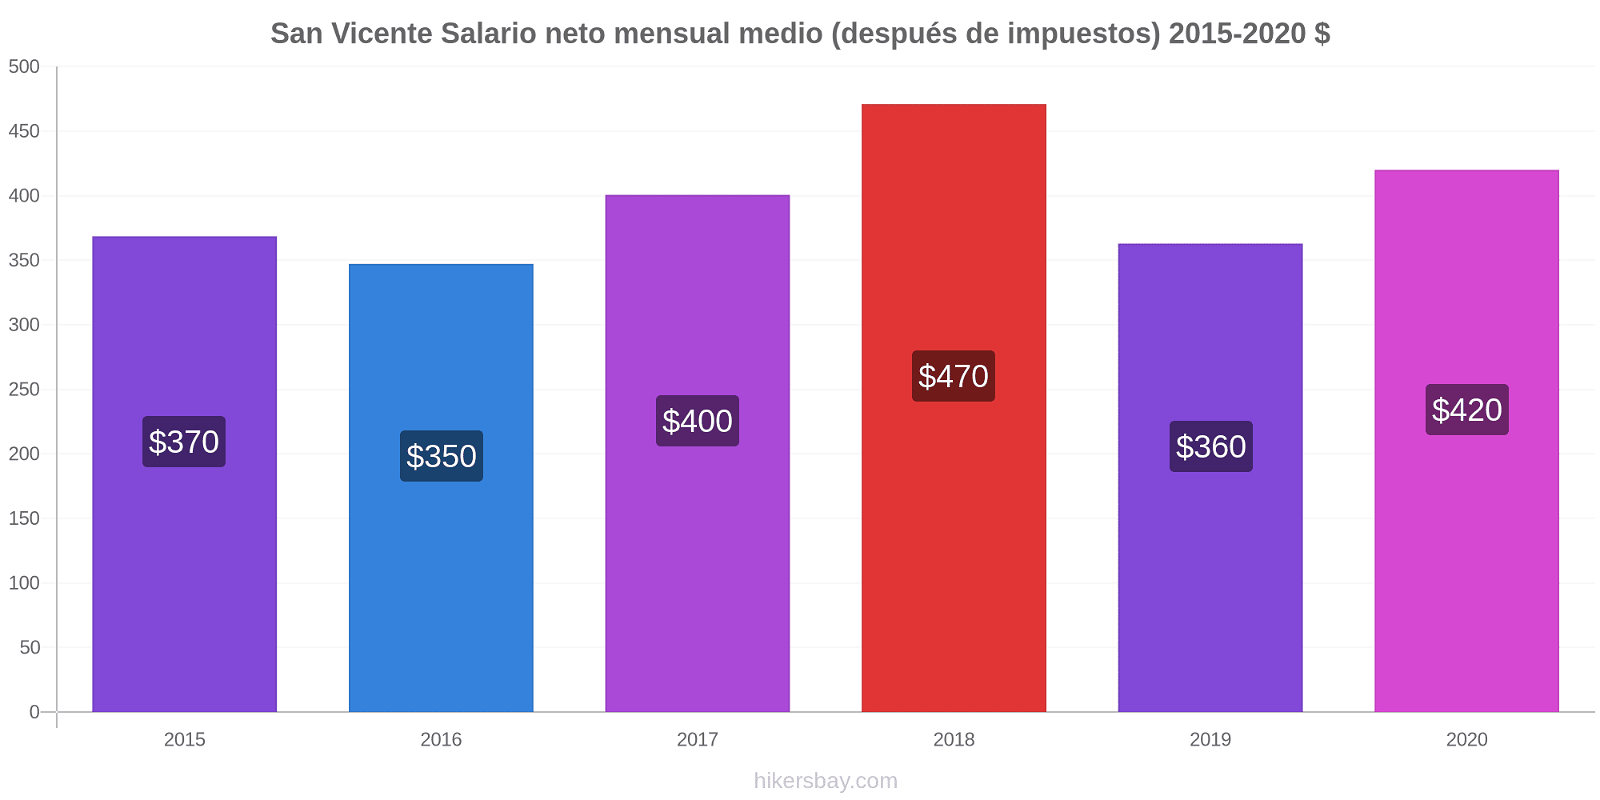 San Vicente cambios de precios Promedio mensual del salario neto (después de pagar impuestos) hikersbay.com